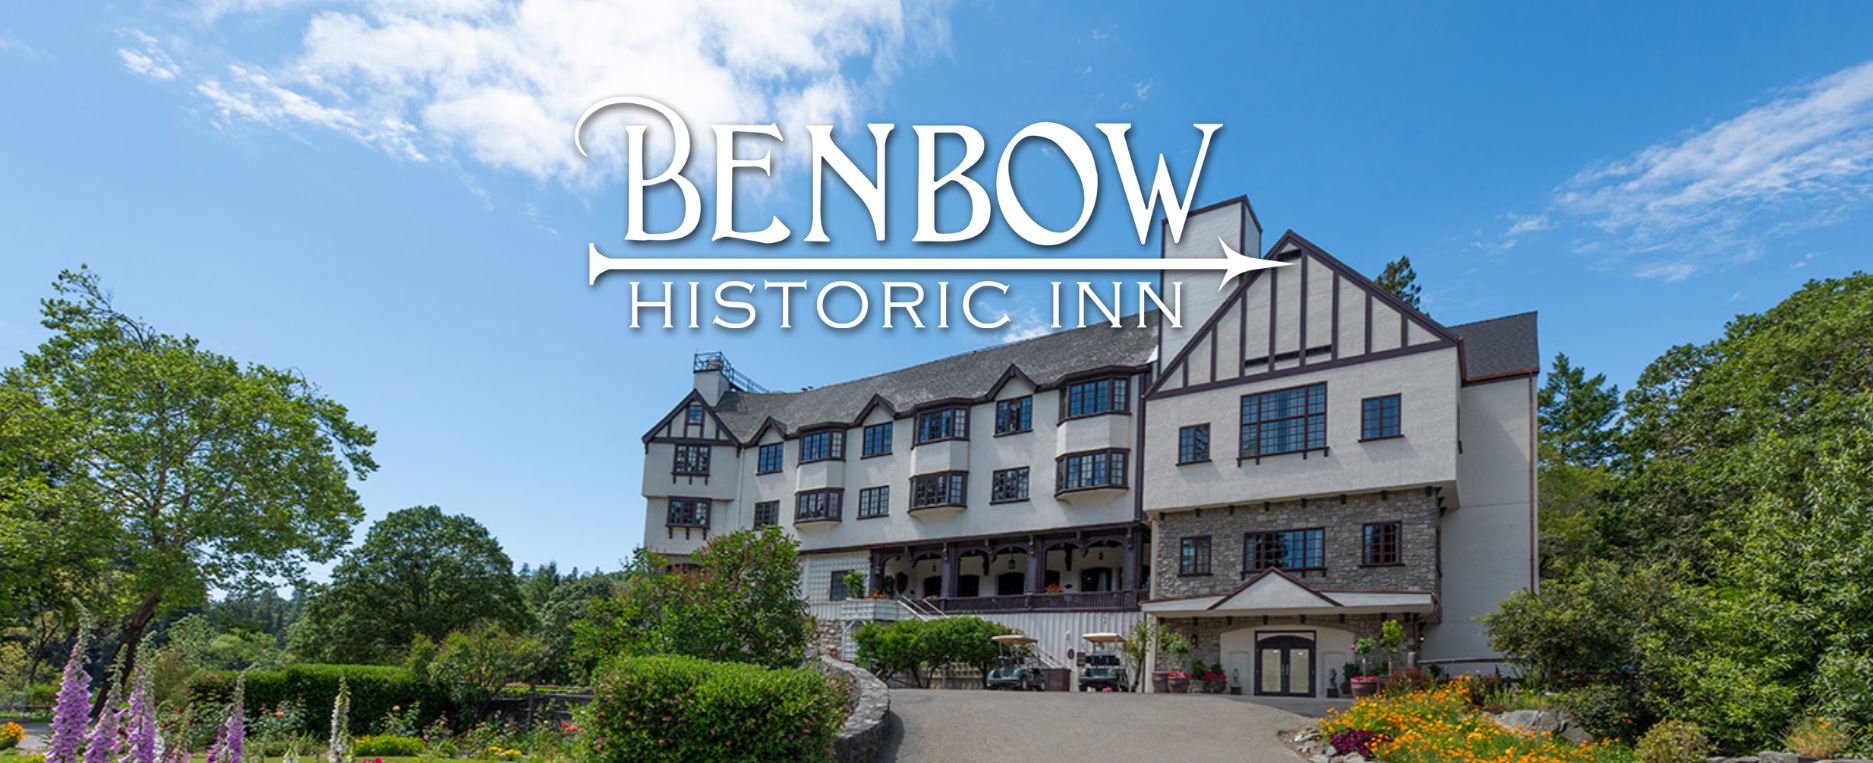 Benbow Inn